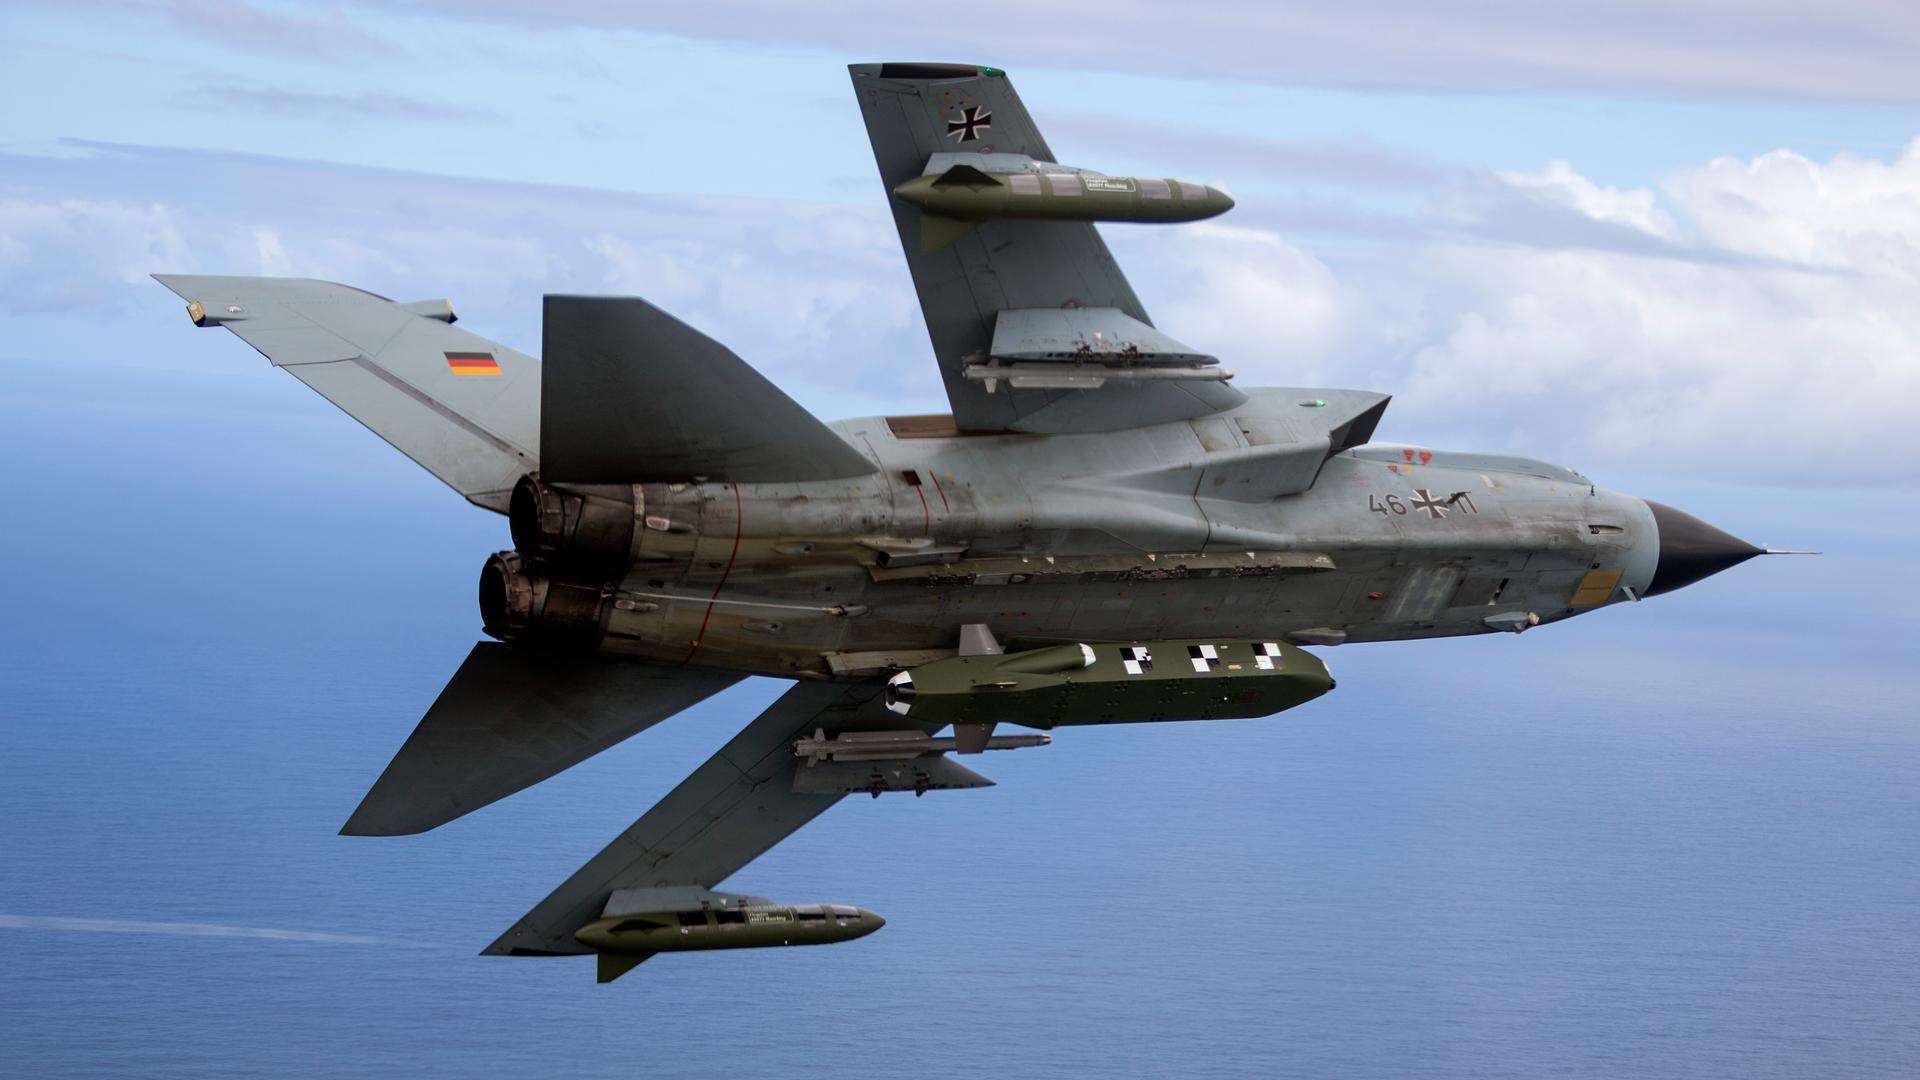 Die von der Bundeswehr herausgegebene Aufnahme zeigt einen Kampfjet vom Typ Tornado, bestückt mit dem Lenkflugkörper Taurus.